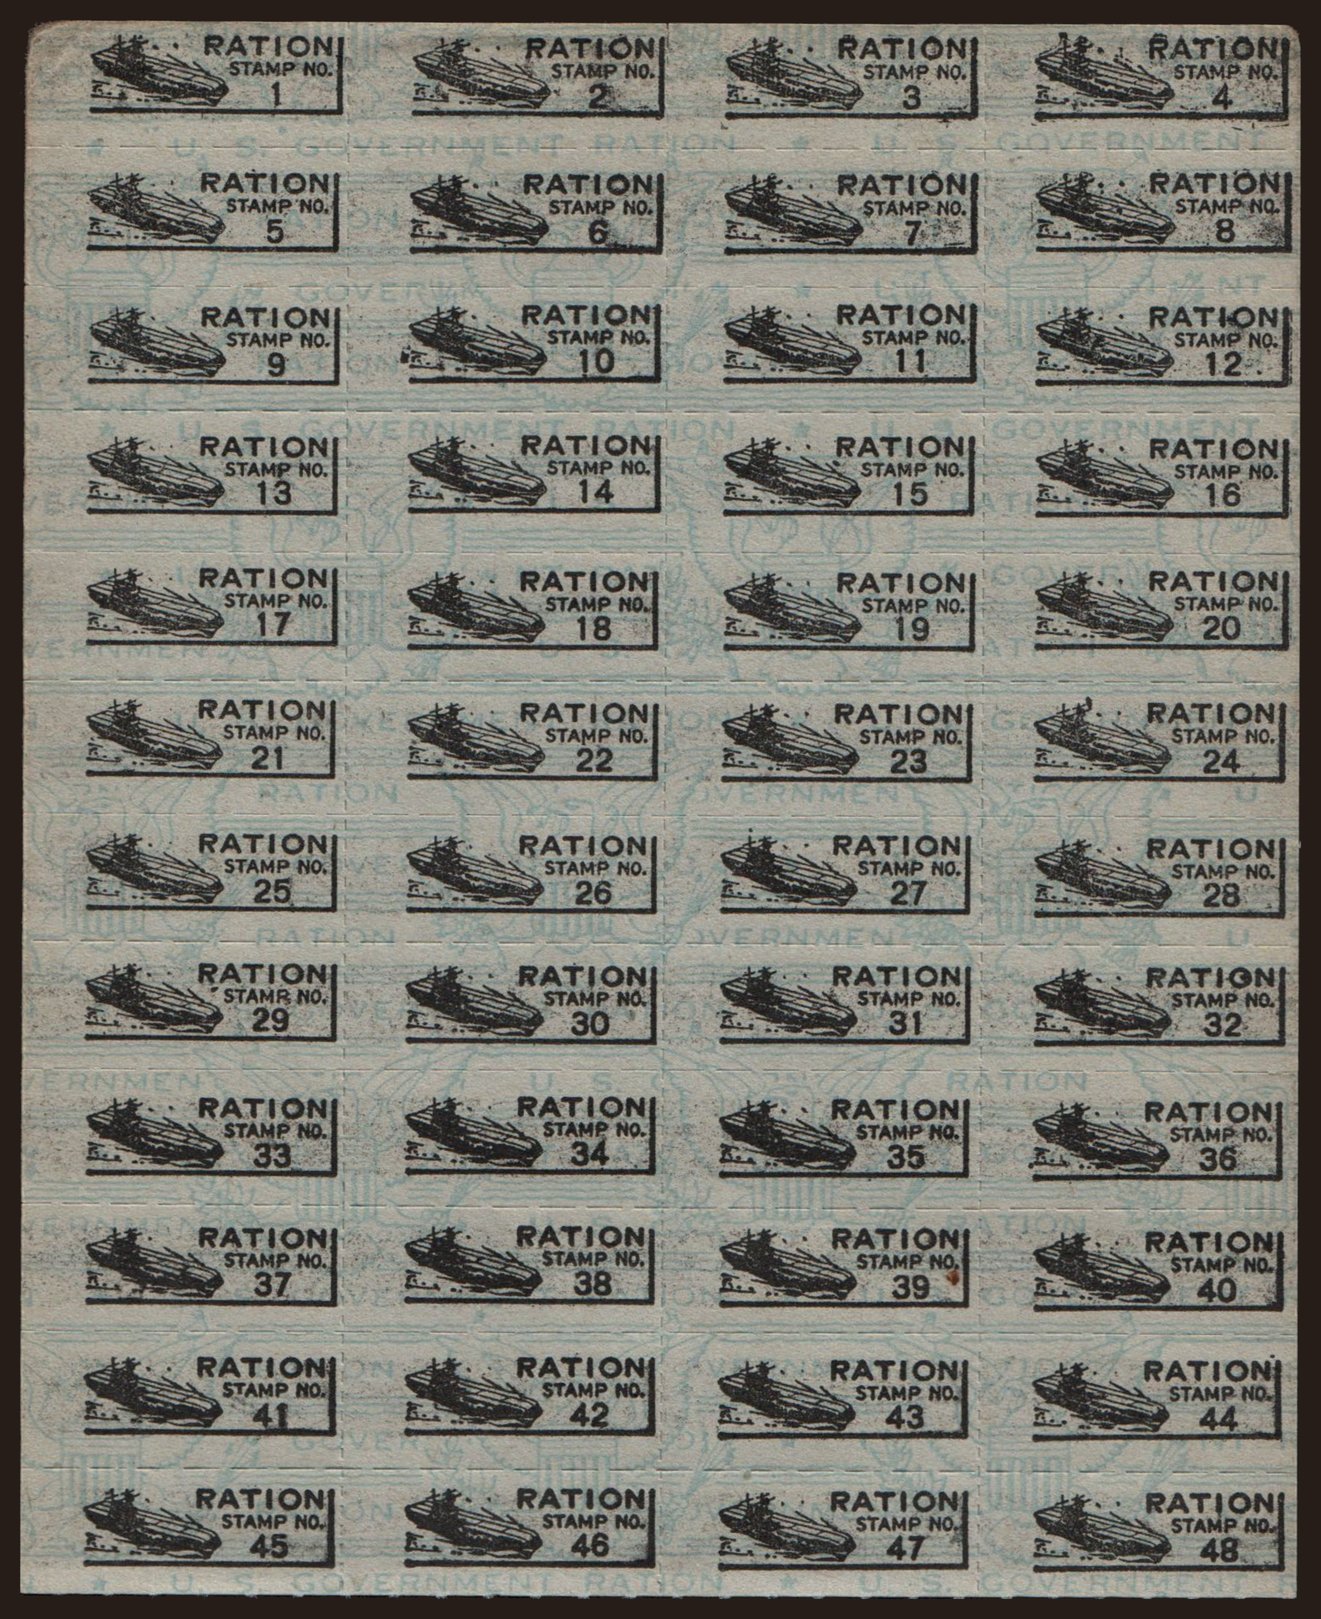 War ration coupon, 194?